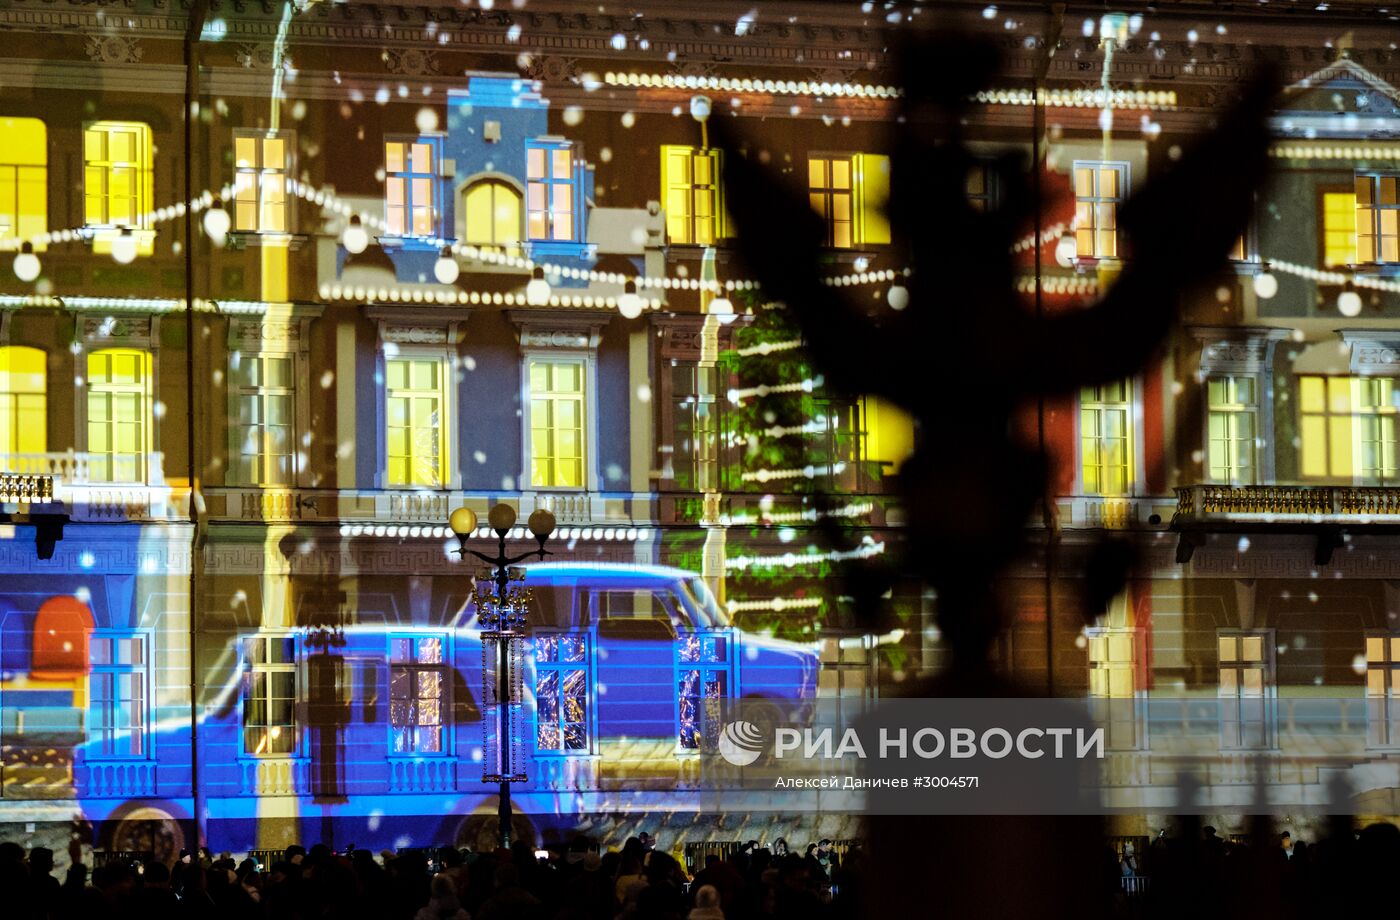 Новогоднее мультимедийное шоу световых технологий в Санкт-Петербурге